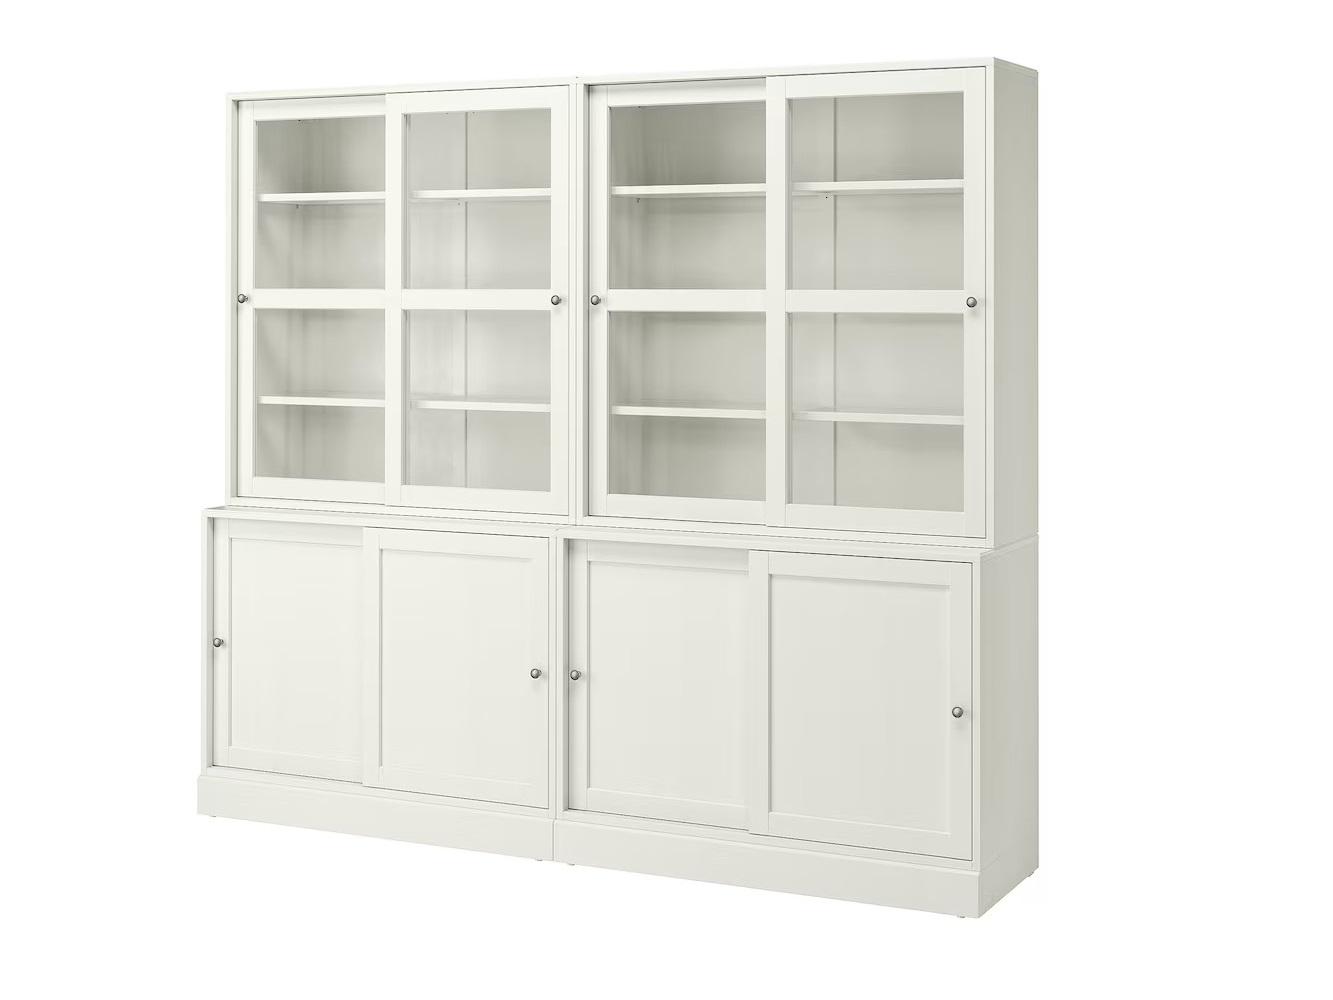 Книжный шкаф Хавста 15 white ИКЕА (IKEA) изображение товара